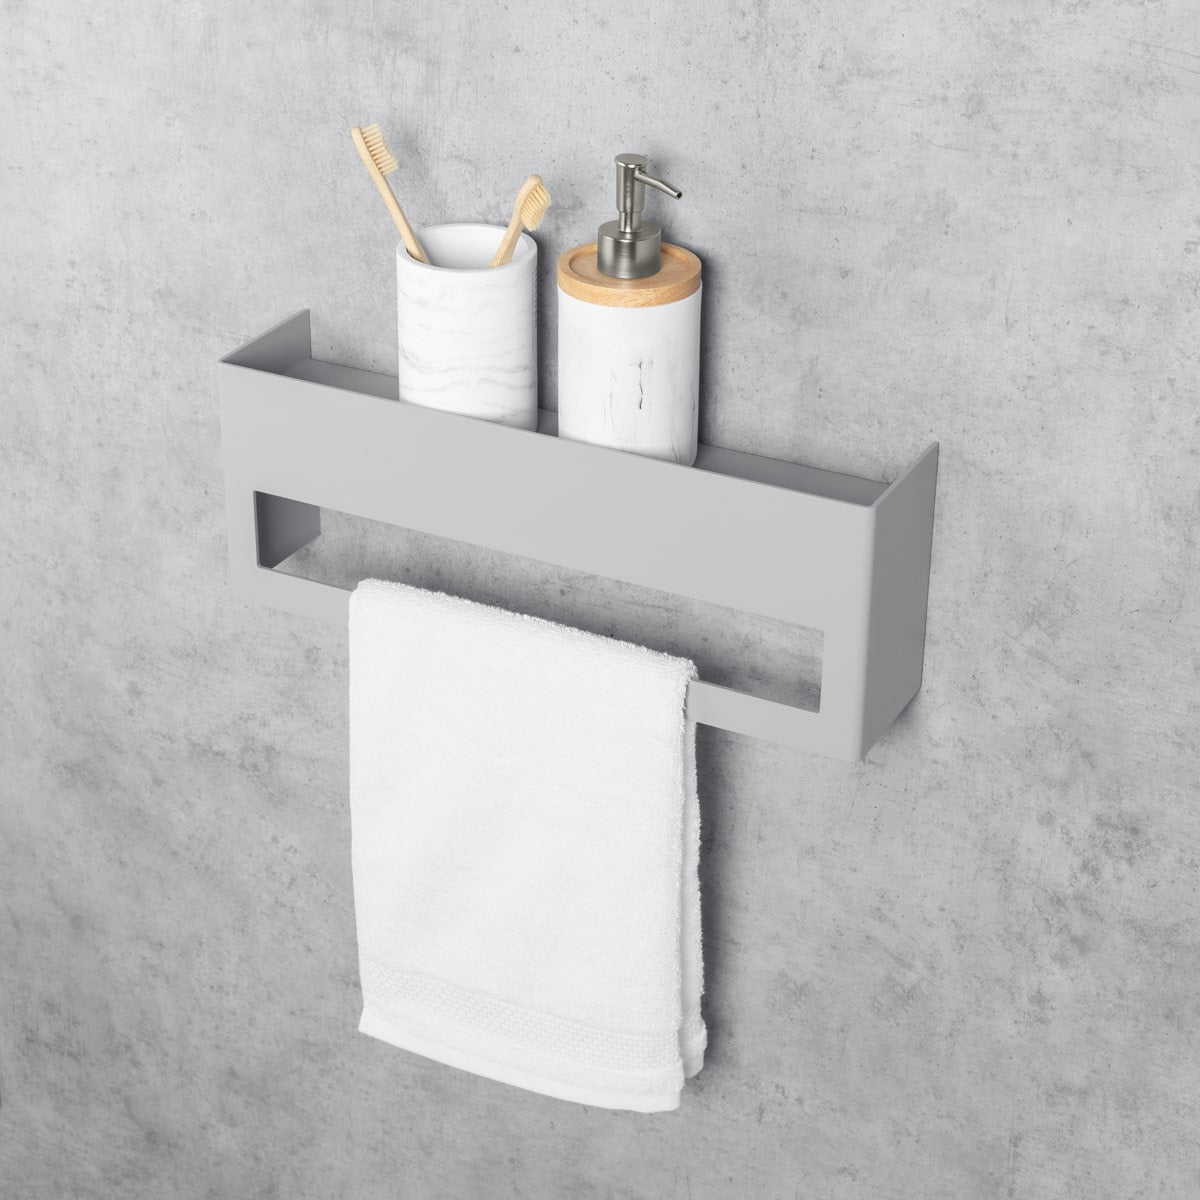 grey towel rack with shelf keyka